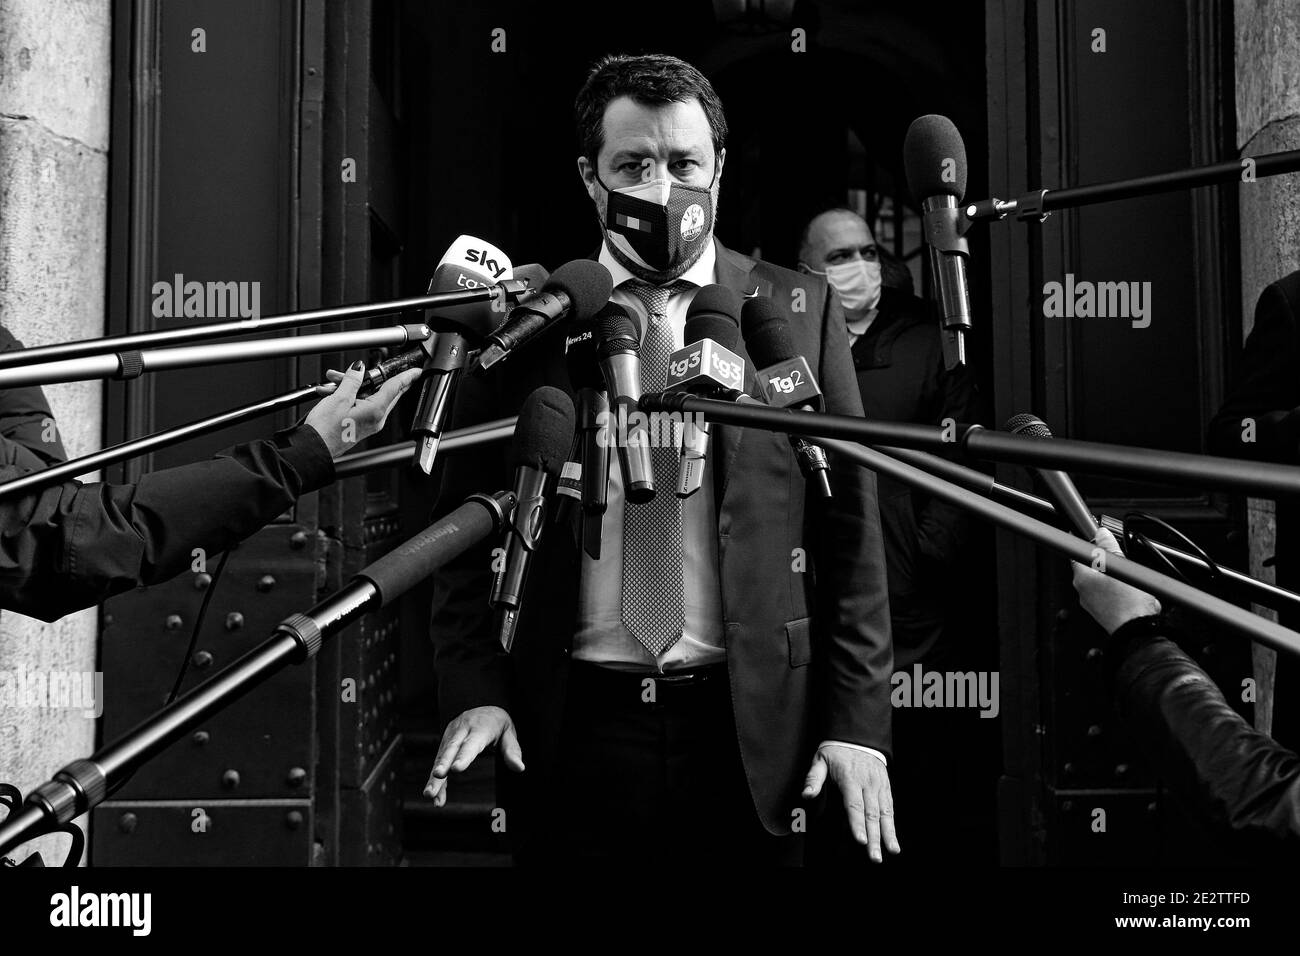 Rome, Italie. 14 janvier 2021. Le secrétaire du parti de droite Lega Matteo Salvini lors d'une conférence de presse à l'extérieur du Sénat. Rome (Italie), 14 janvier 2021 photo Samantha Zucchi/Insidefoto crédit: Insidefoto srl/Alay Live News Banque D'Images